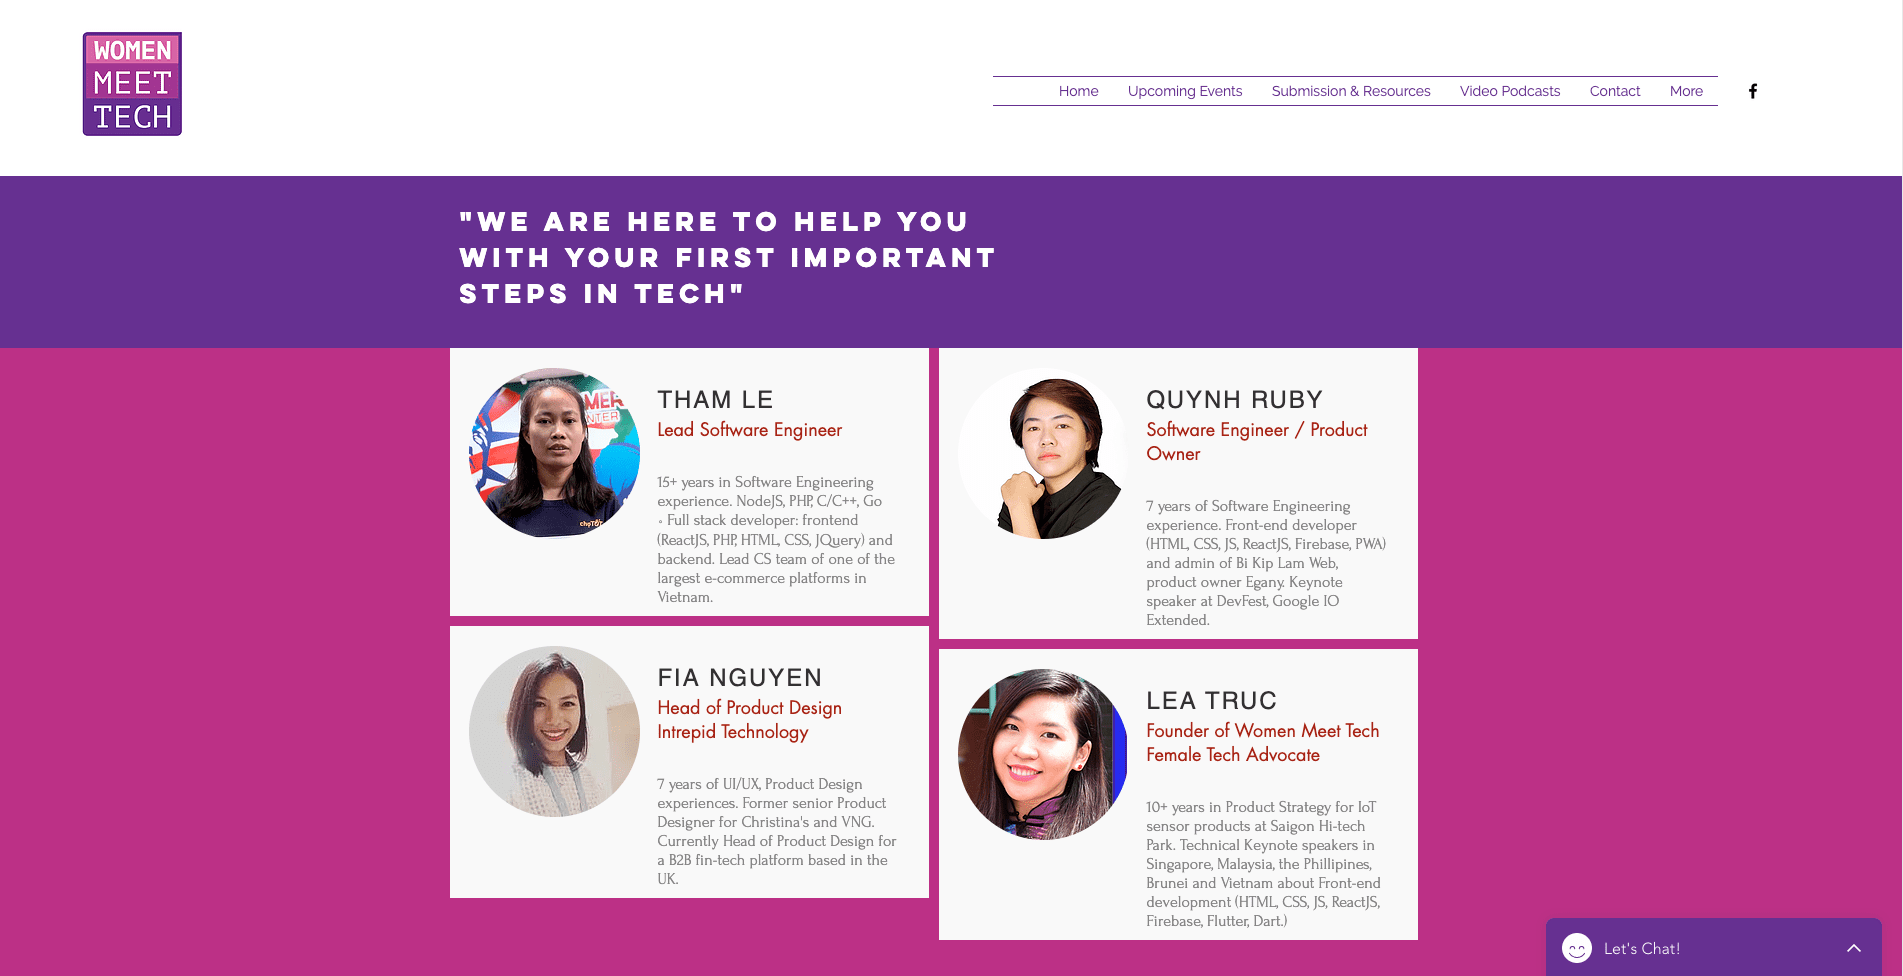 Quỳnh Ruby - Women Meet Tech